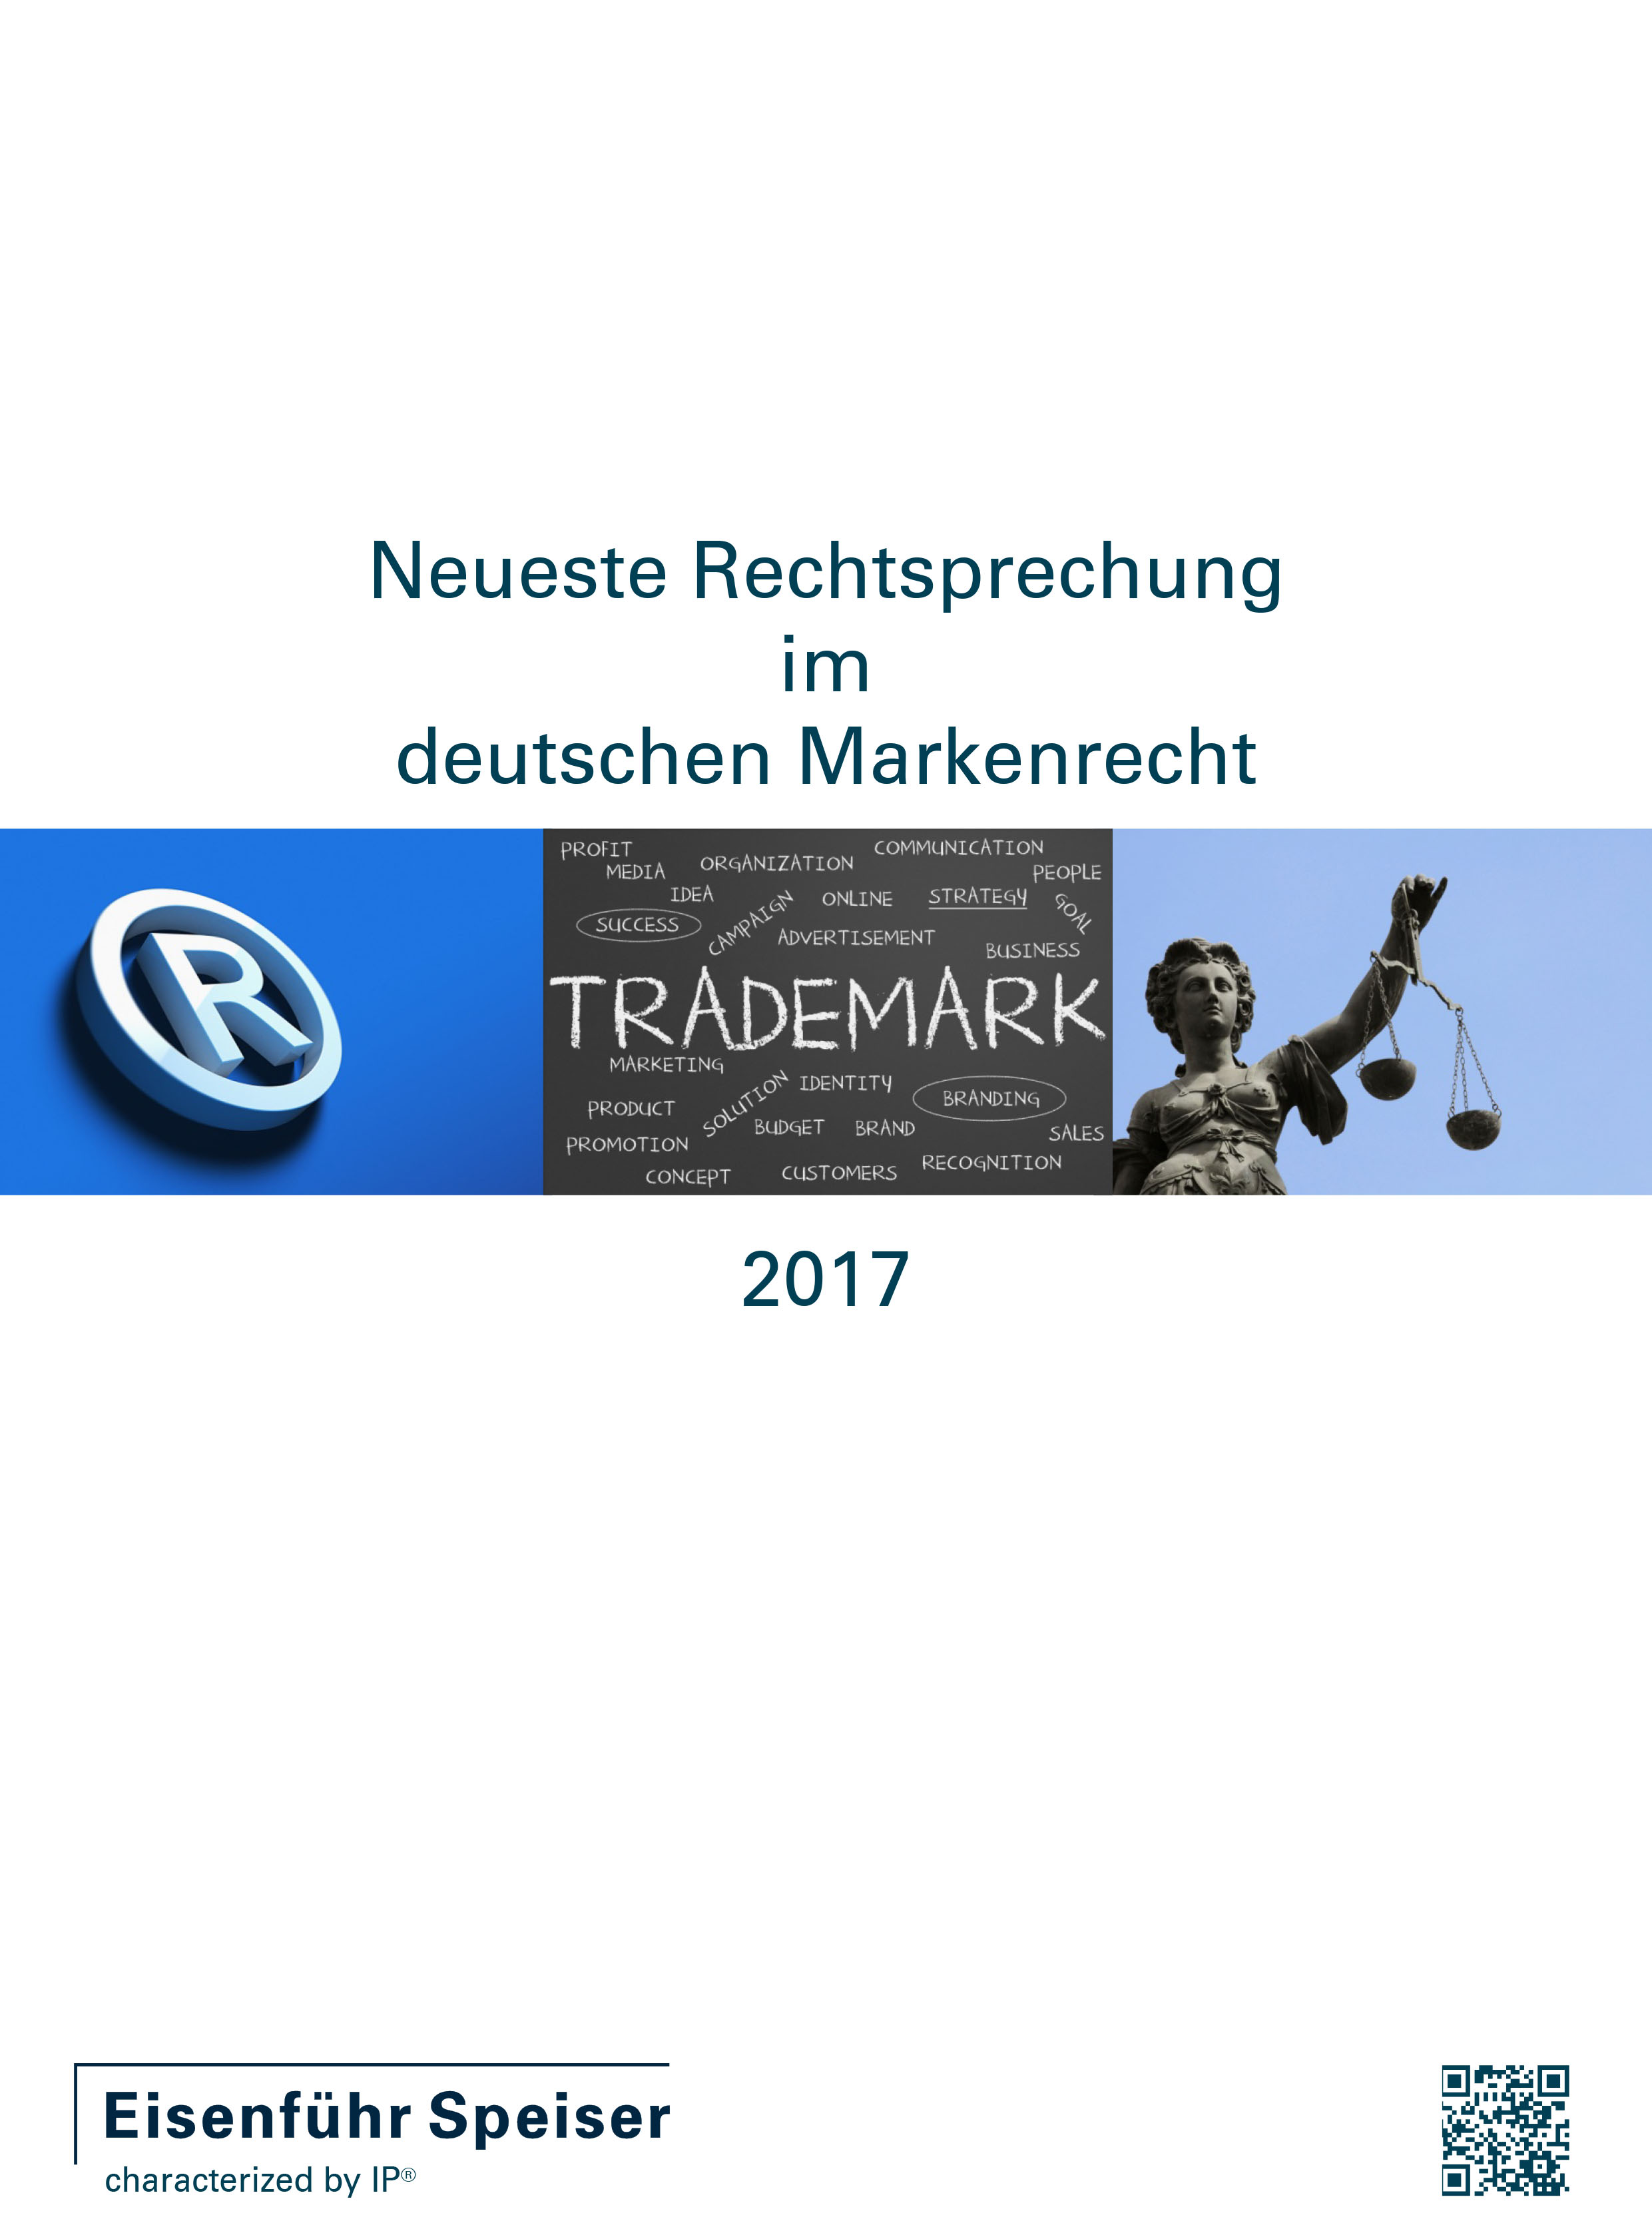 neueste rechtsprechung im deutschen markenrecht 2017